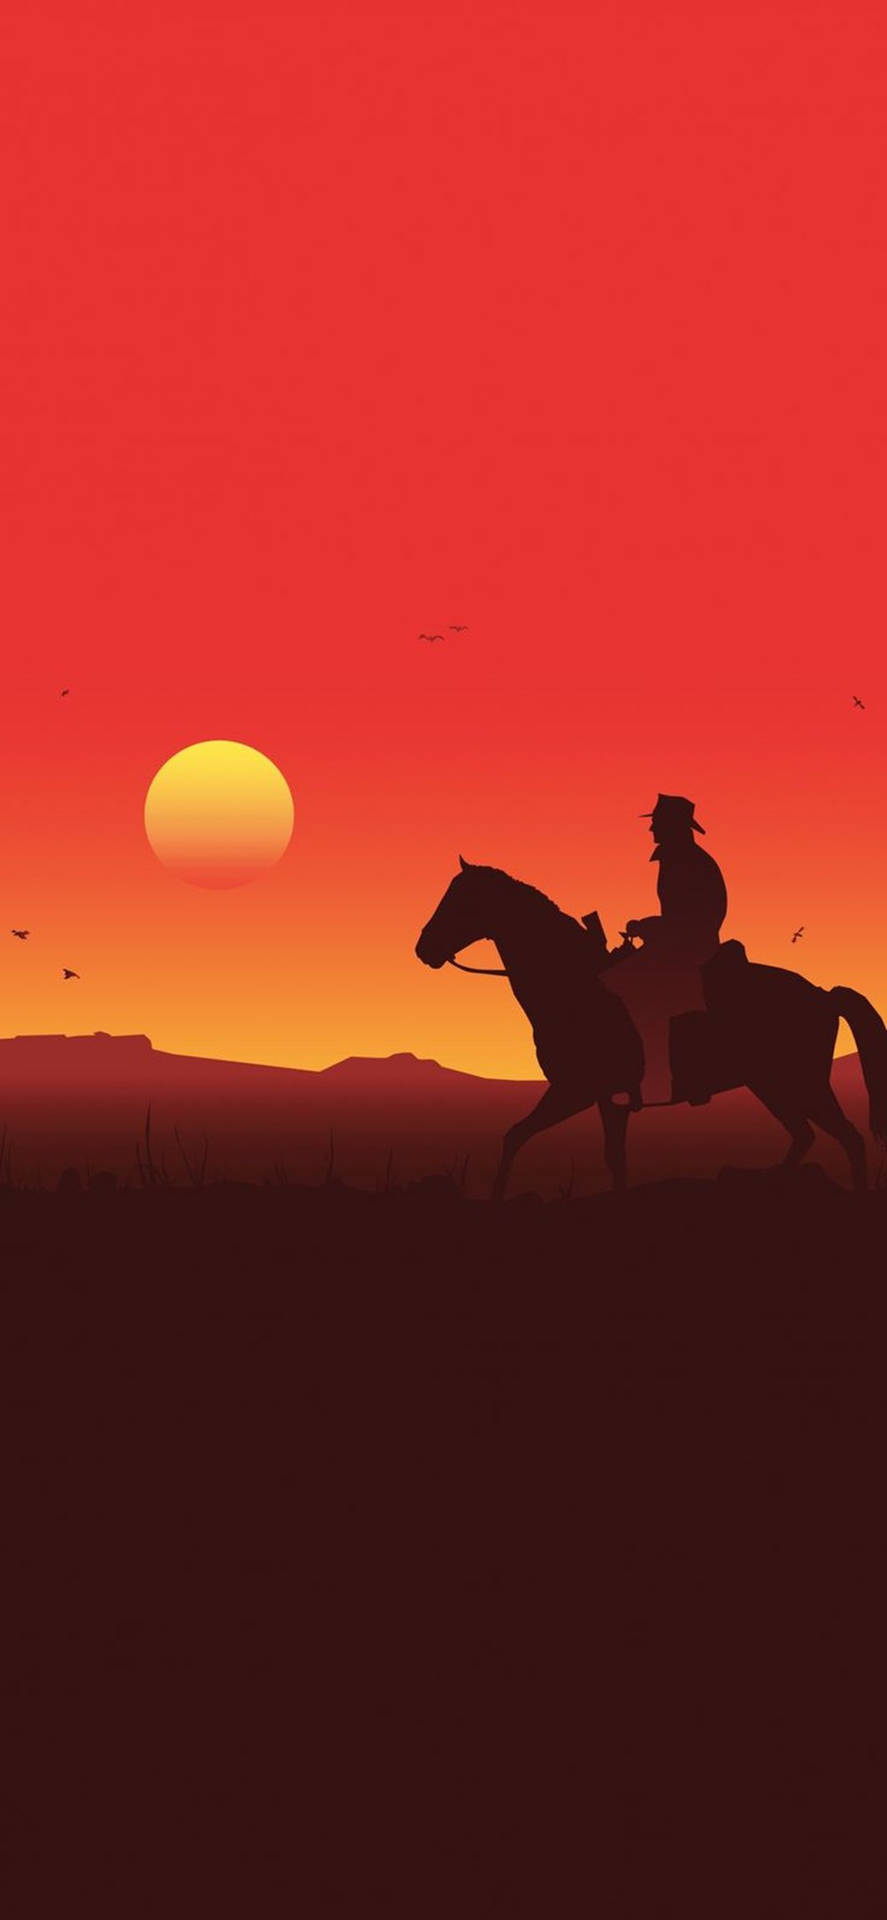 Begegneder Mähne Des Wilden Westens - Arthur Morgans Pferd In Red Dead Redemption 2 Wallpaper